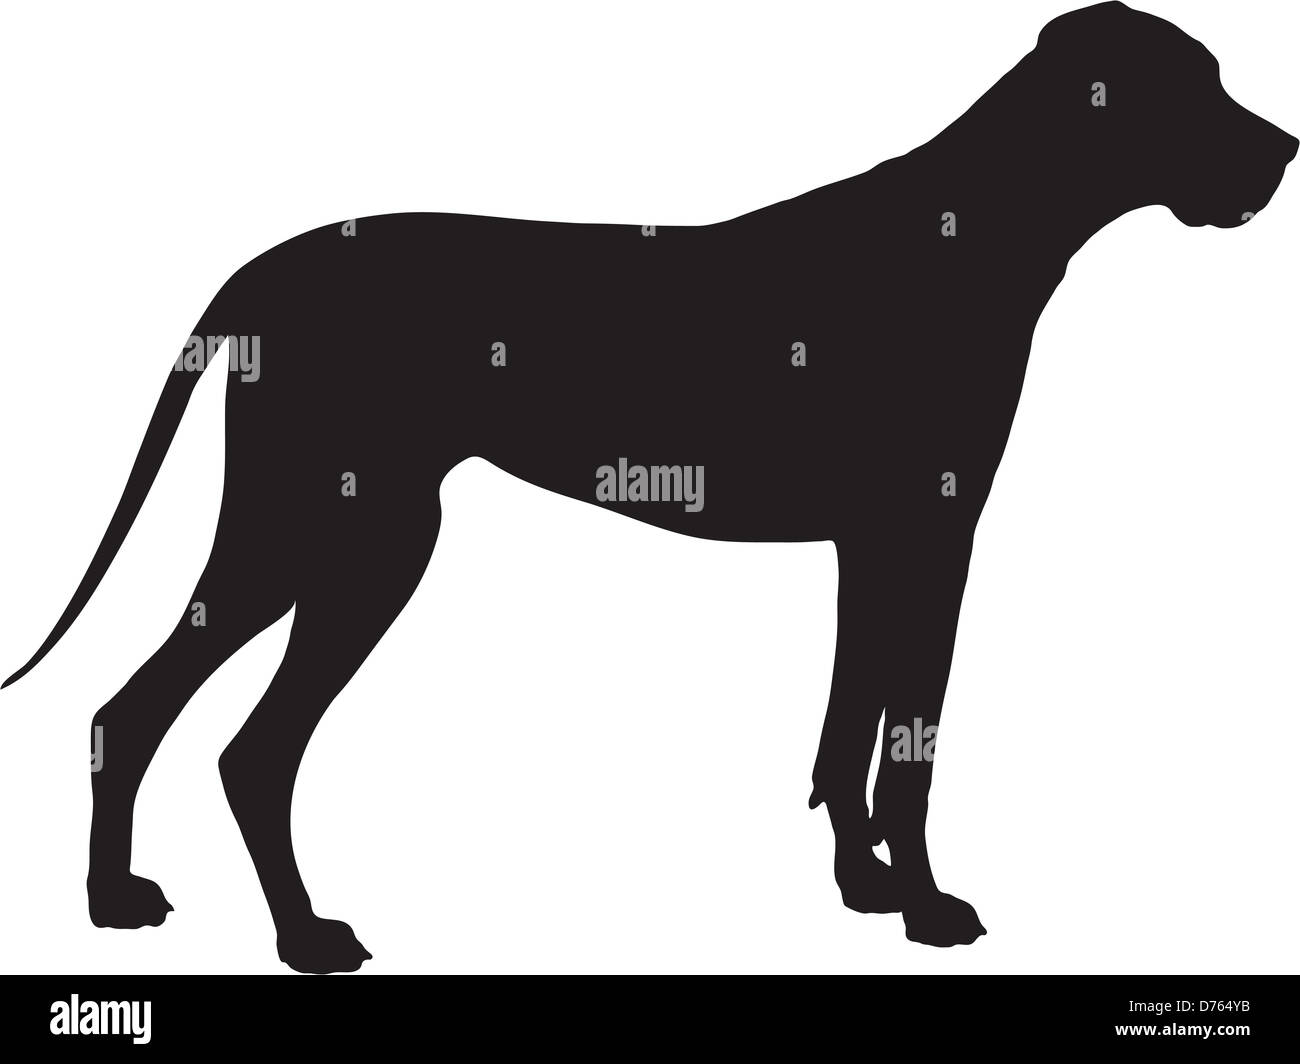 A Great Dane dog shown in black silhouette profile. Stock Photo